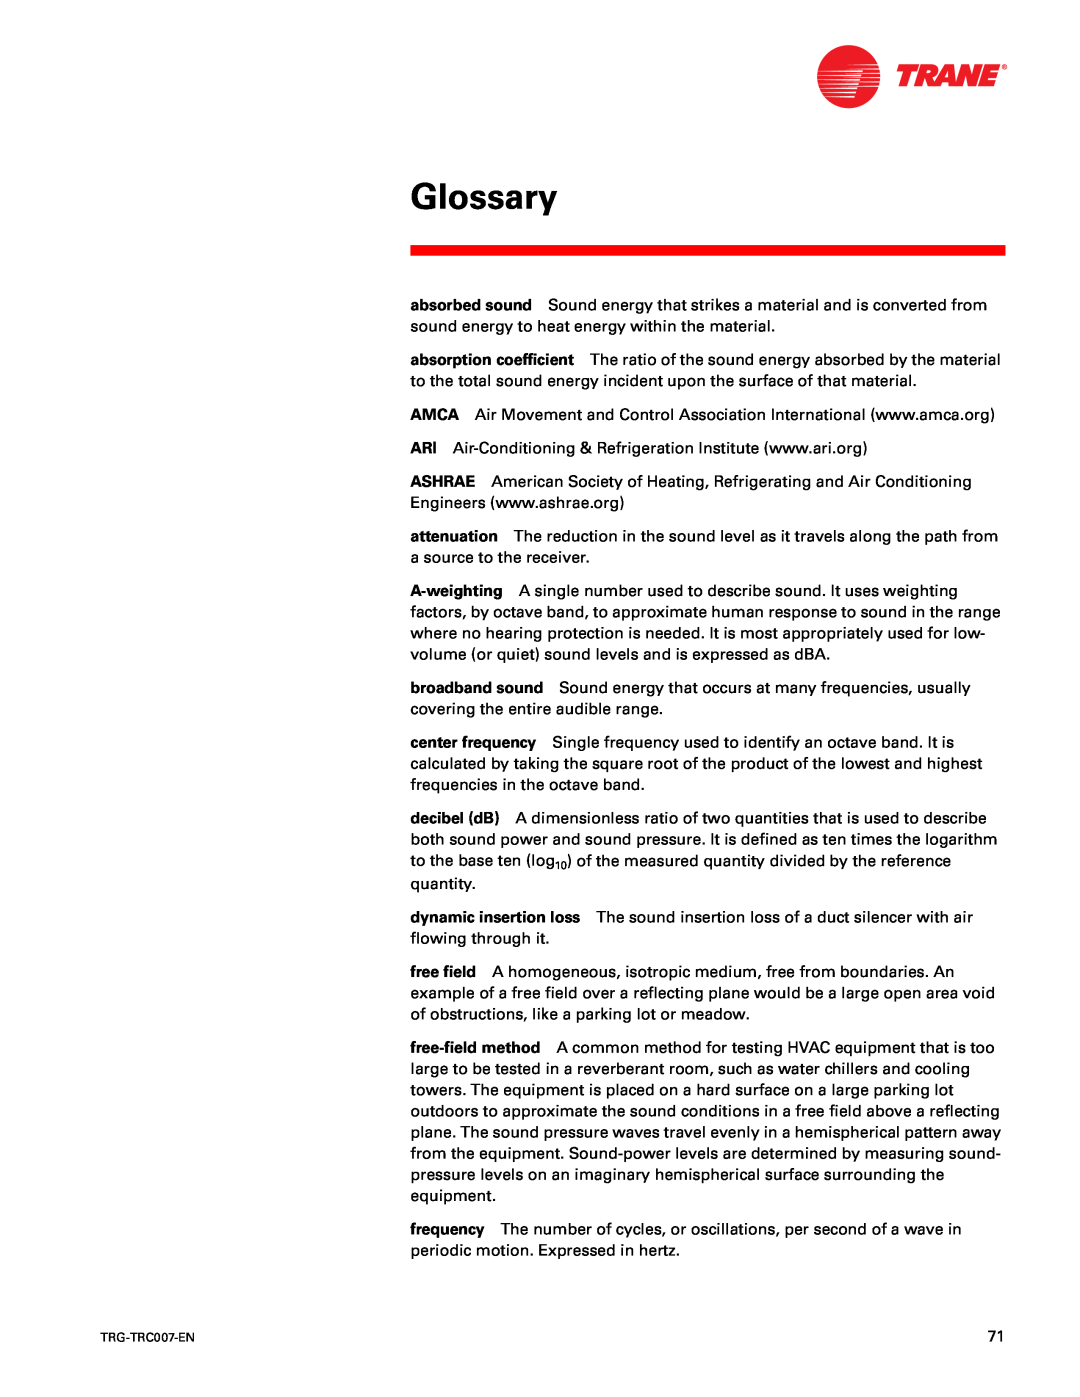 Trane TRG-TRC007-EN manual Glossary 